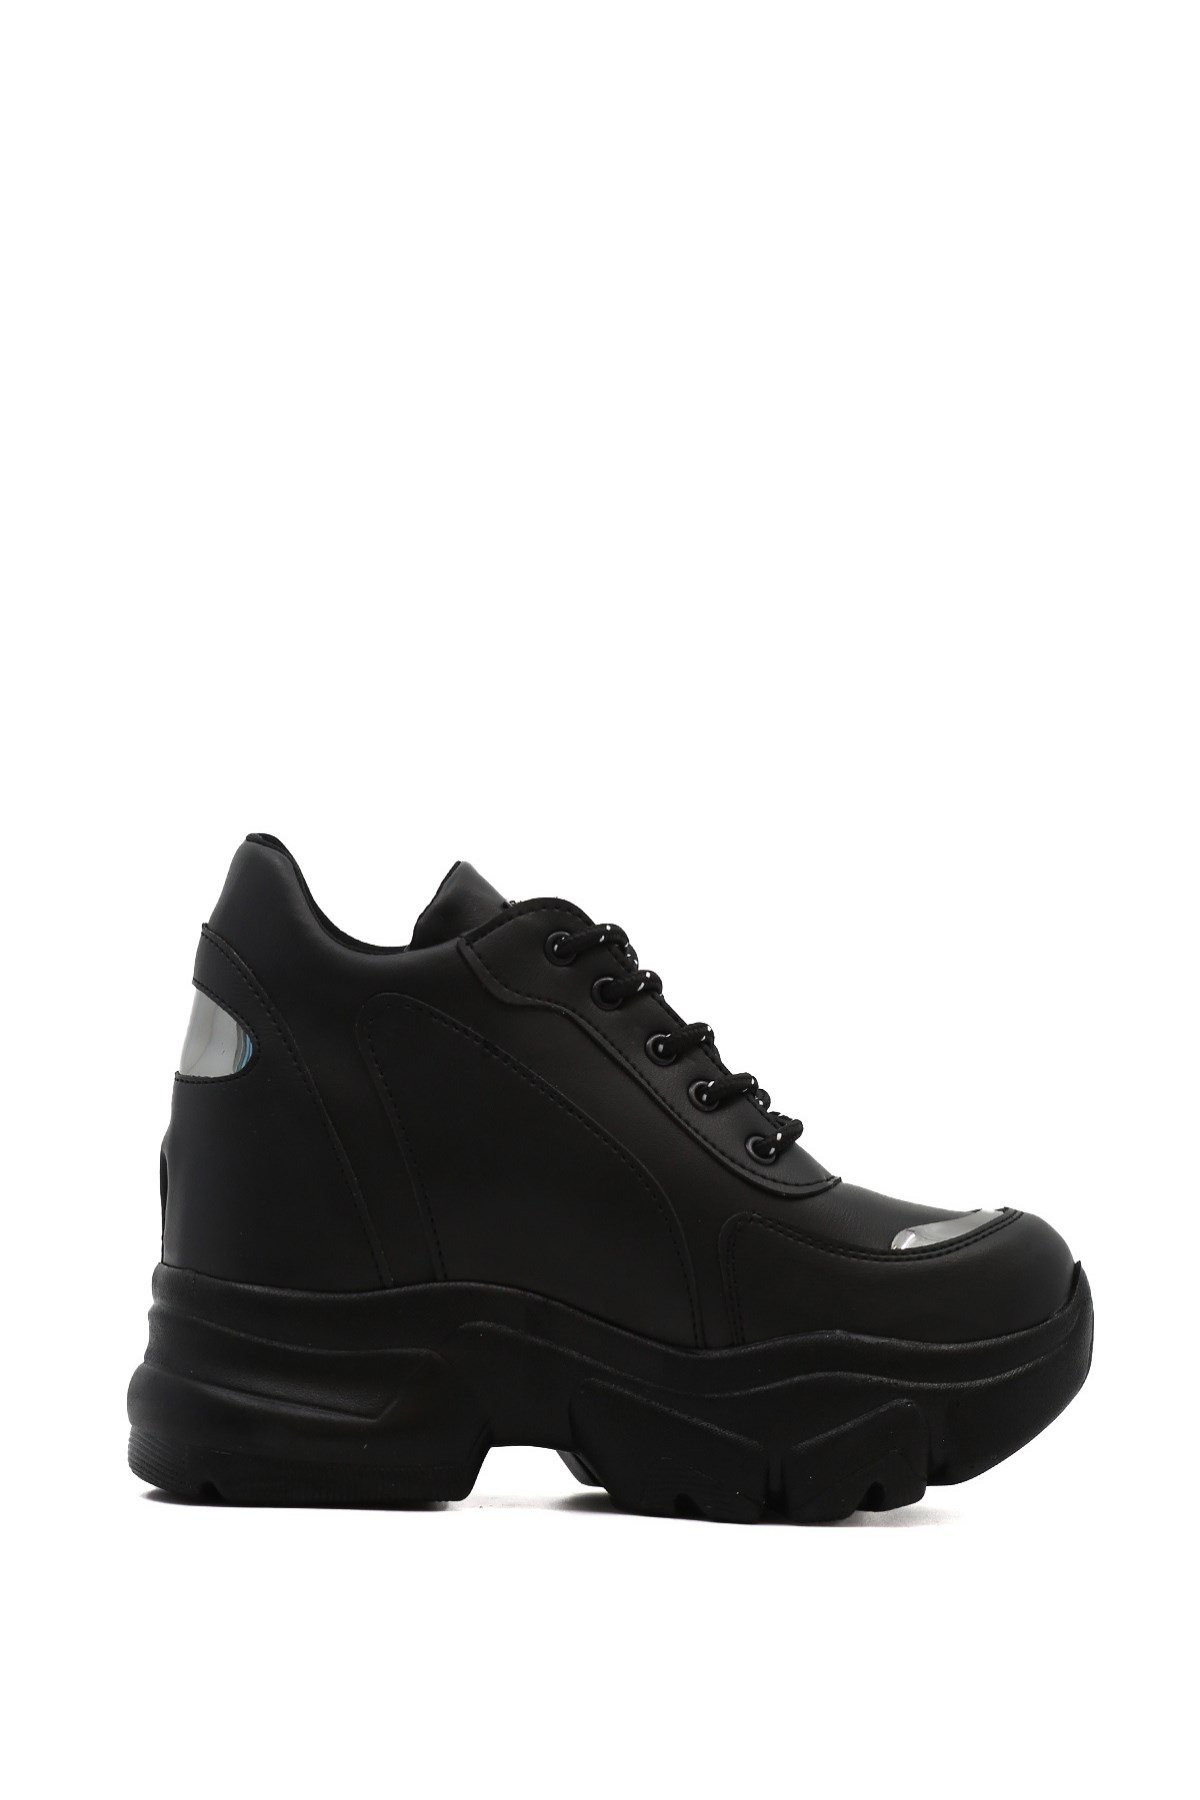 Blas 10 Cm Dolgu Topuk Yeni̇ Sezon Sneakers Spor Ayakkabi Siyah - Still  Durağı